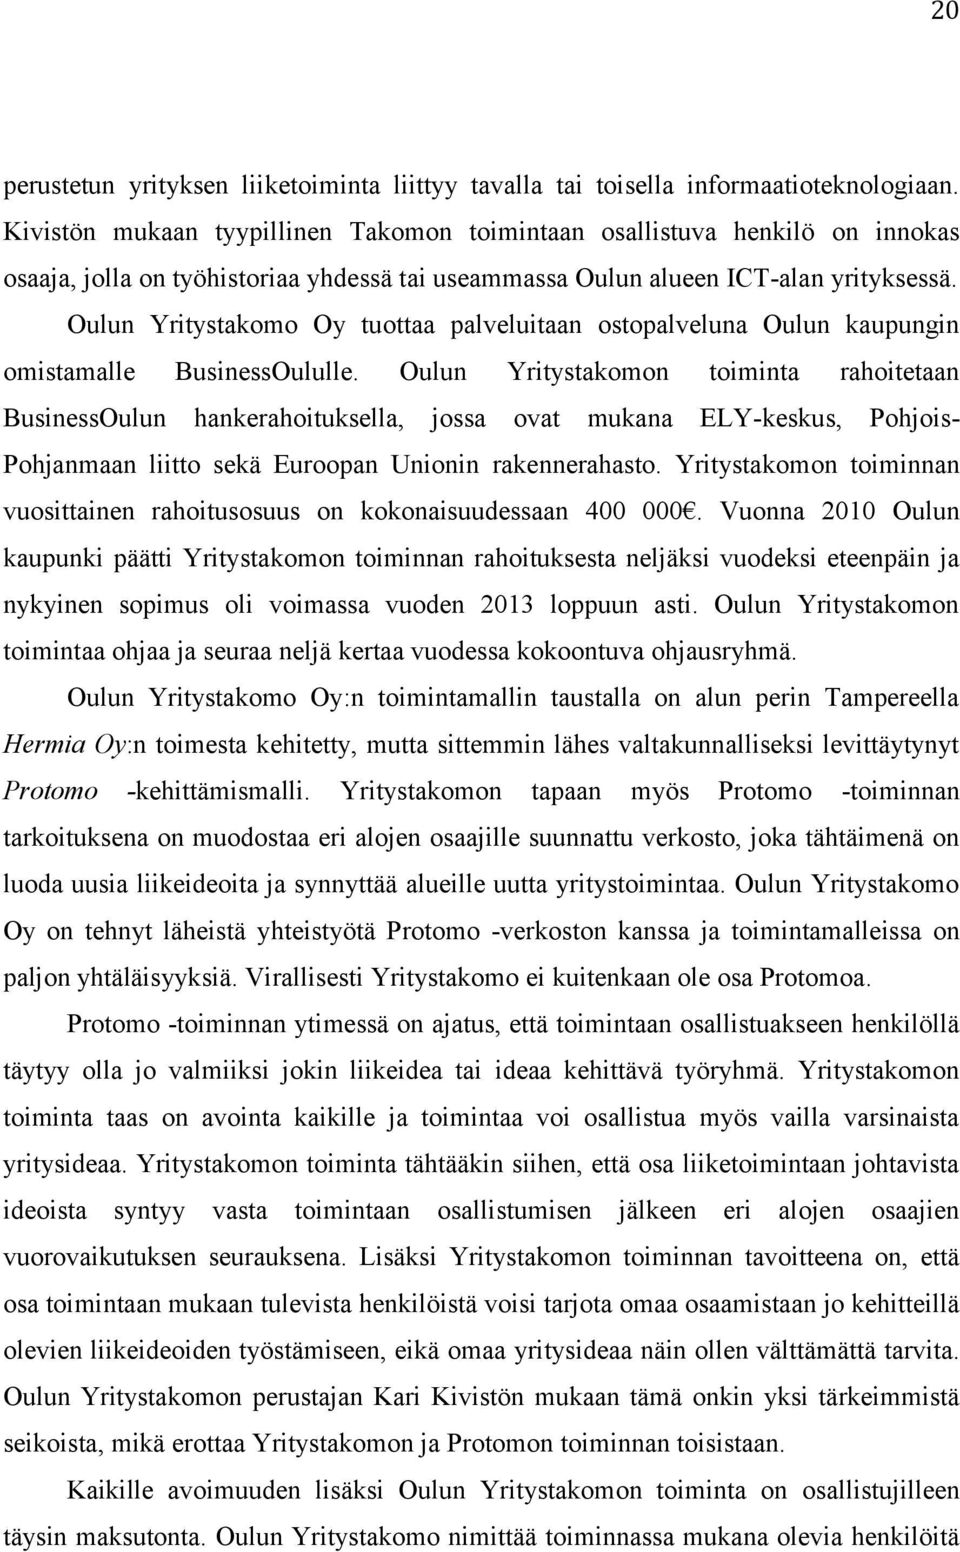 Oulun Yritystakomo Oy tuottaa palveluitaan ostopalveluna Oulun kaupungin omistamalle BusinessOululle.